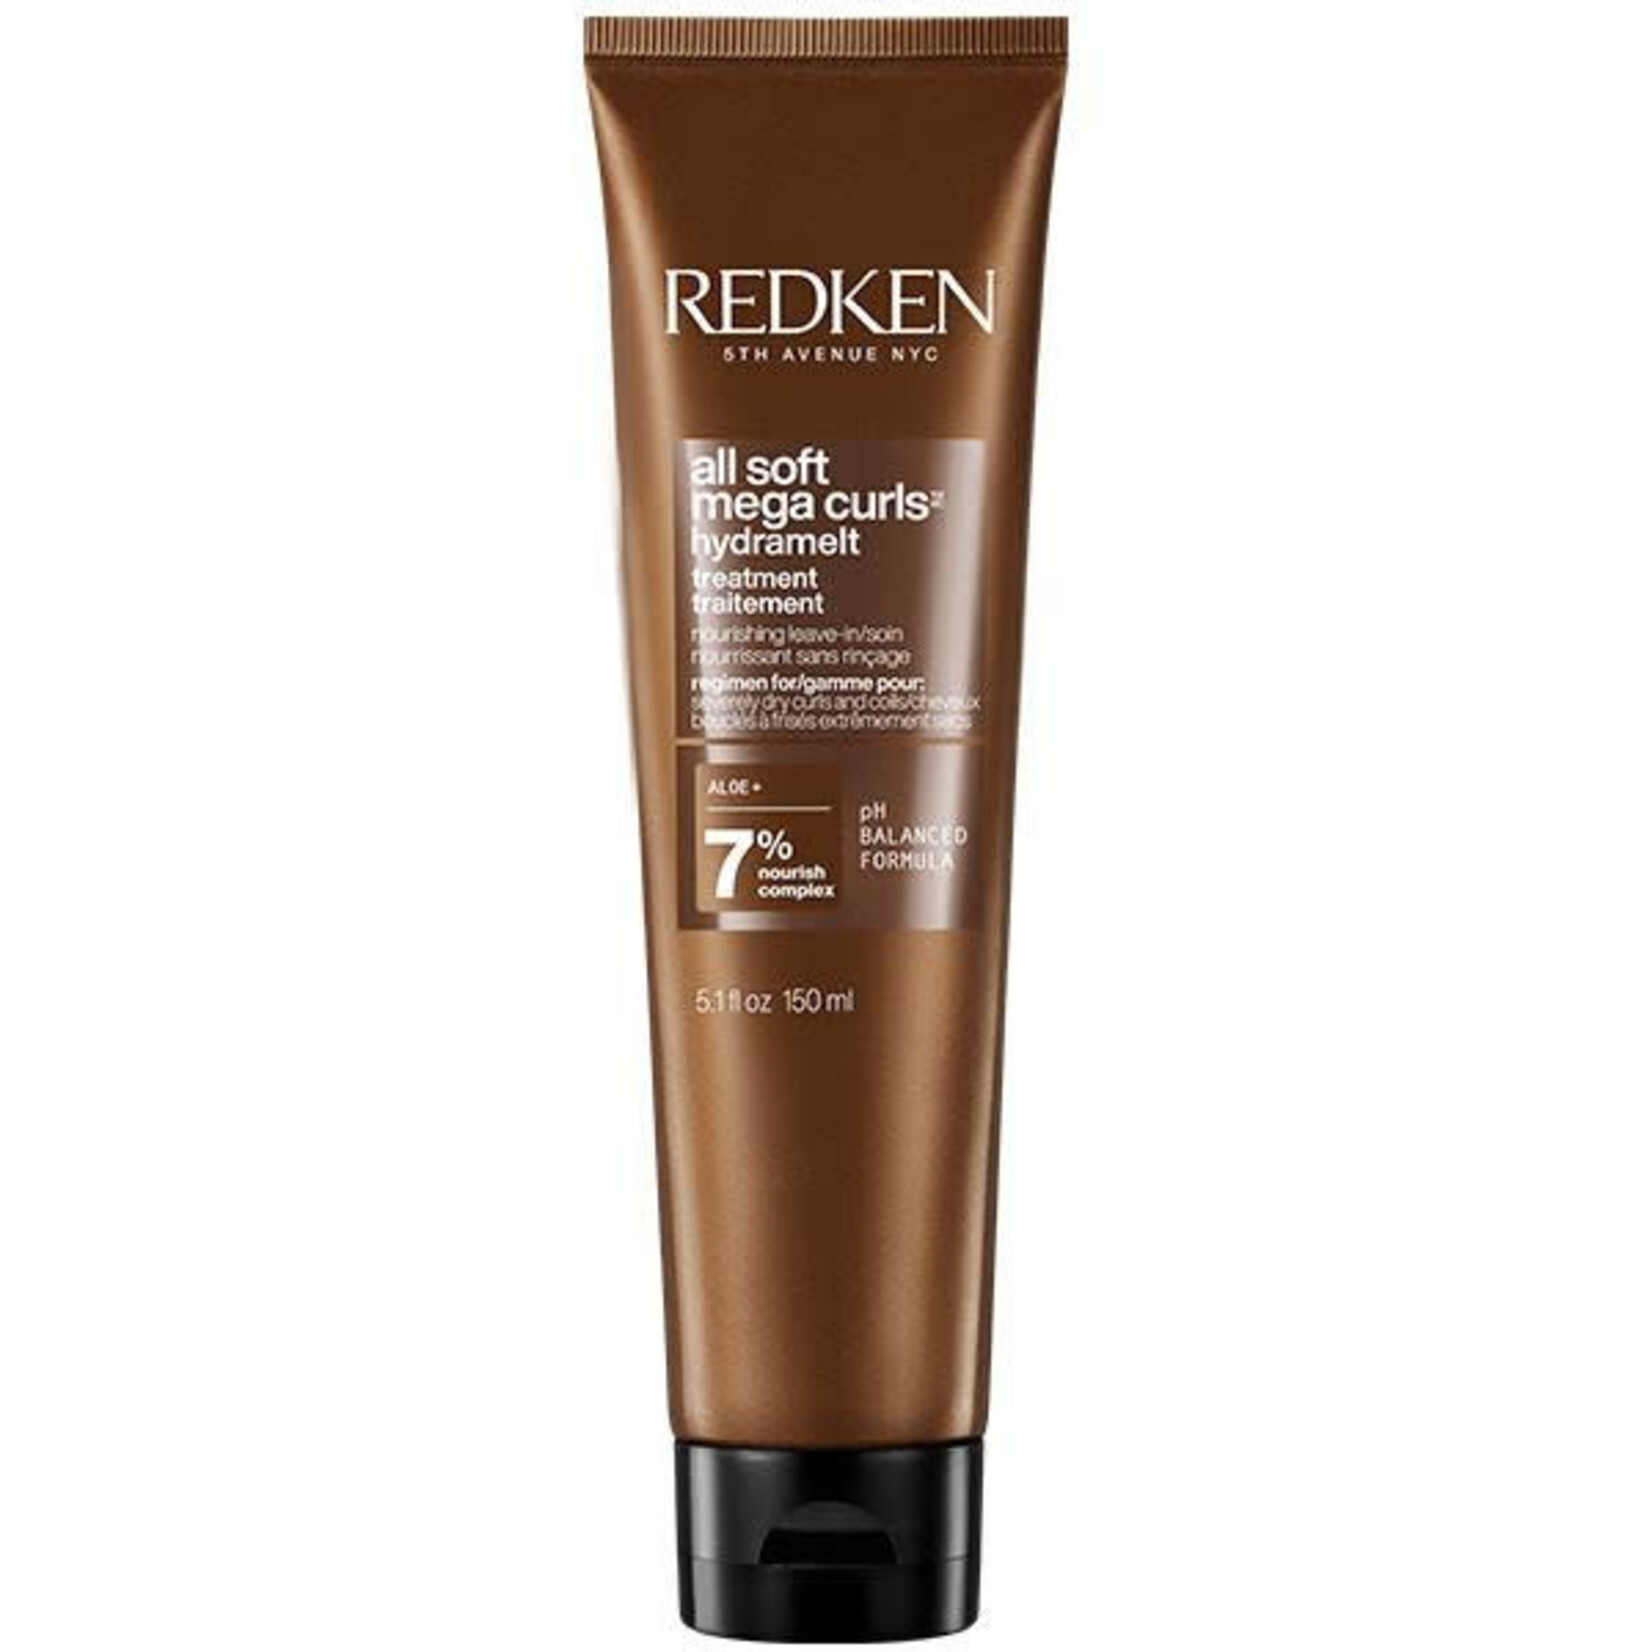 Redken Redken - All Soft - Mega curls leave-in treatment 150ml